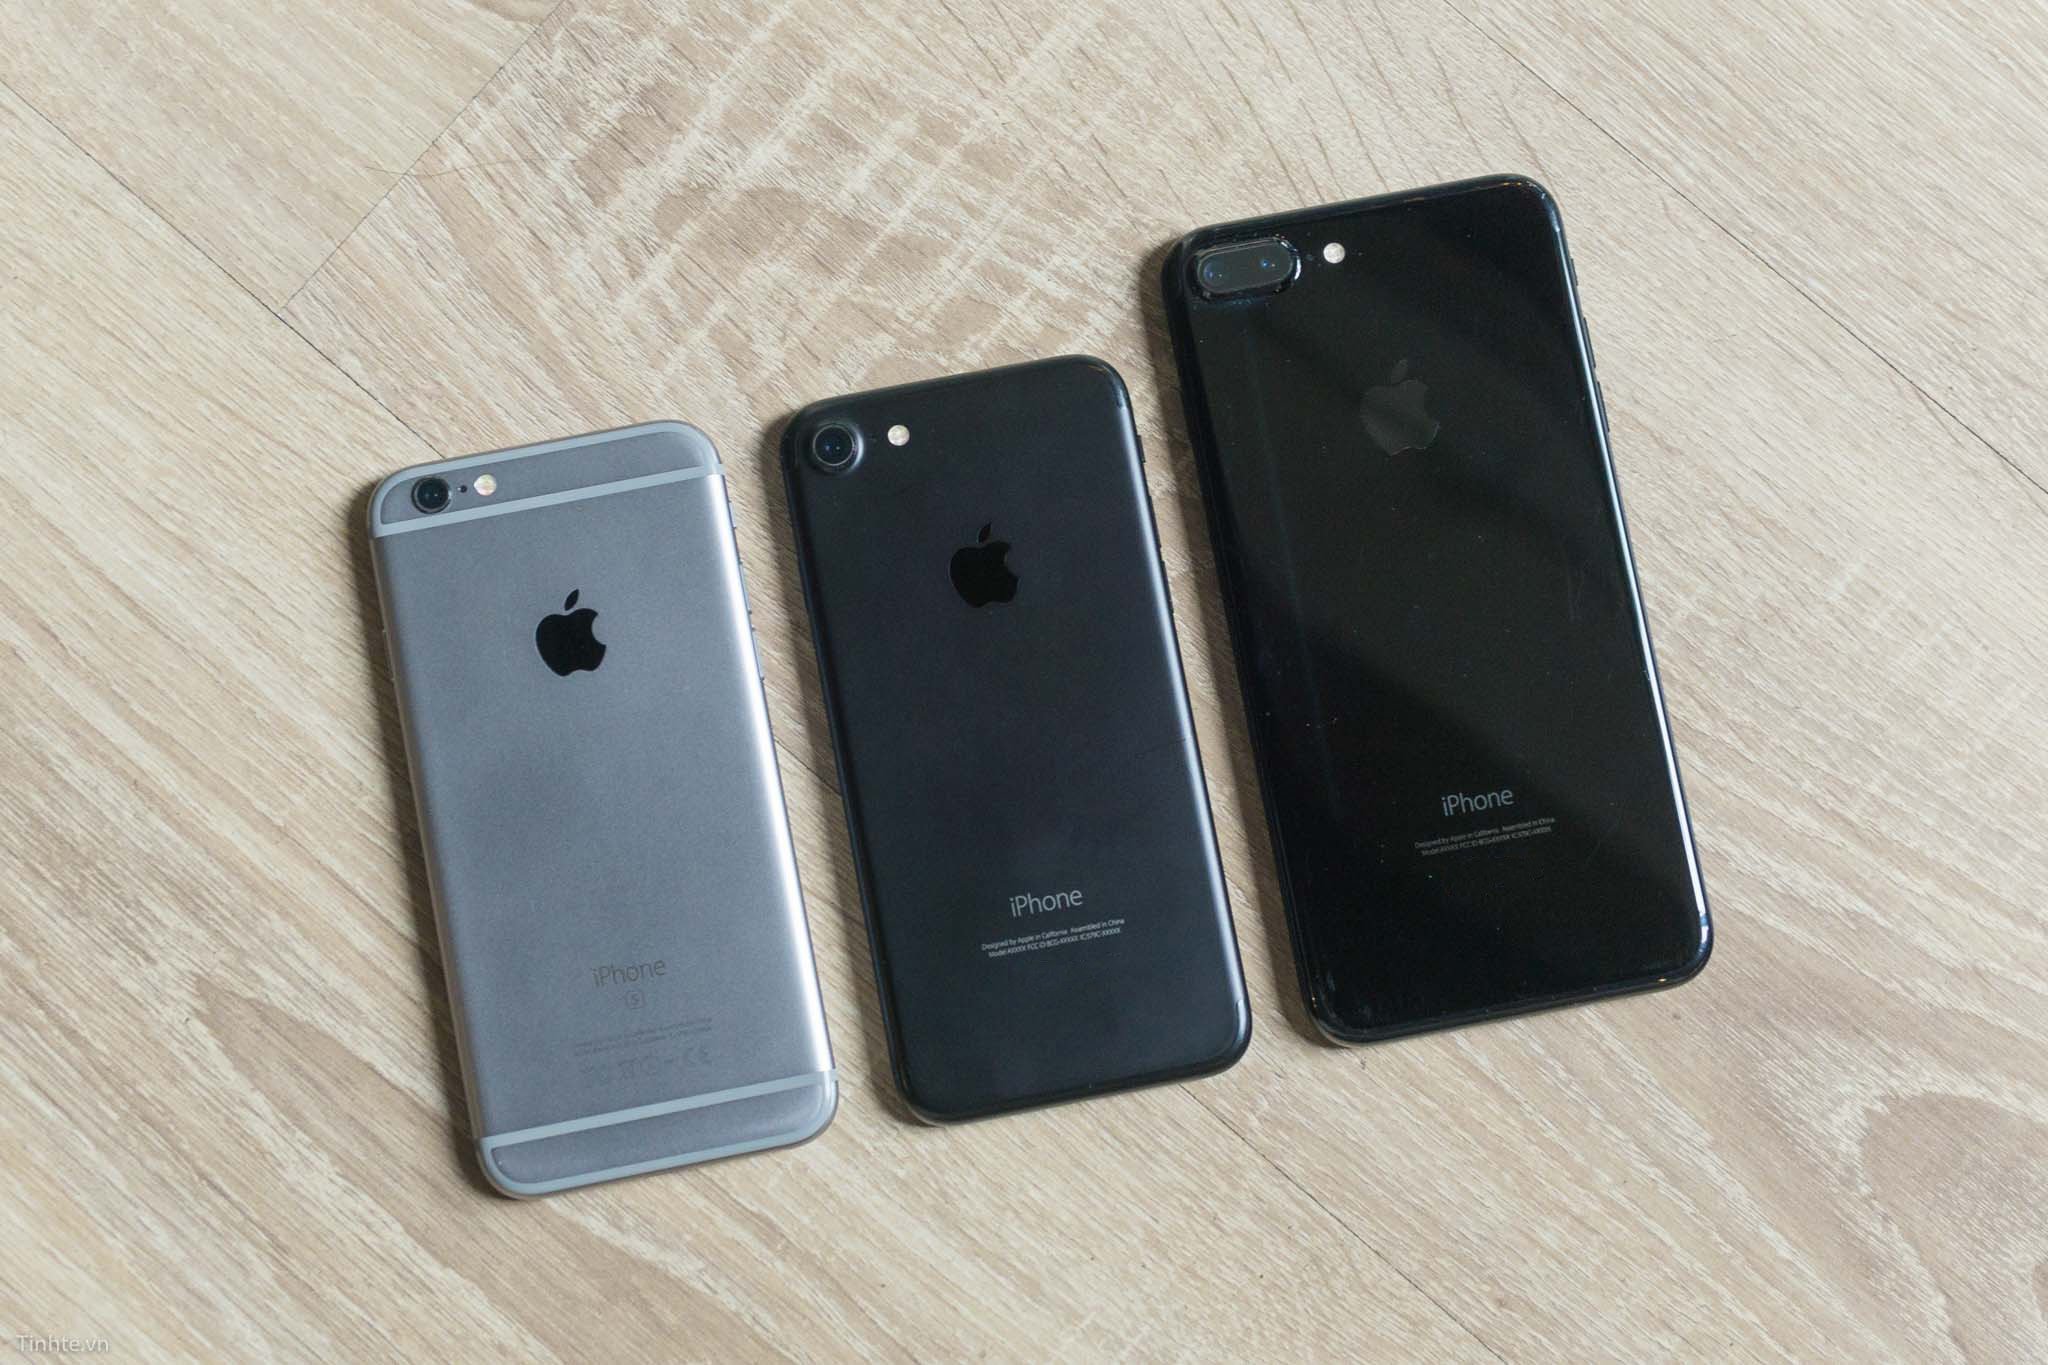 So sánh 3 màu của iPhone: Space Grey - Black - Jet Black, máy màu Đen khi trầy sẽ như thế nào?